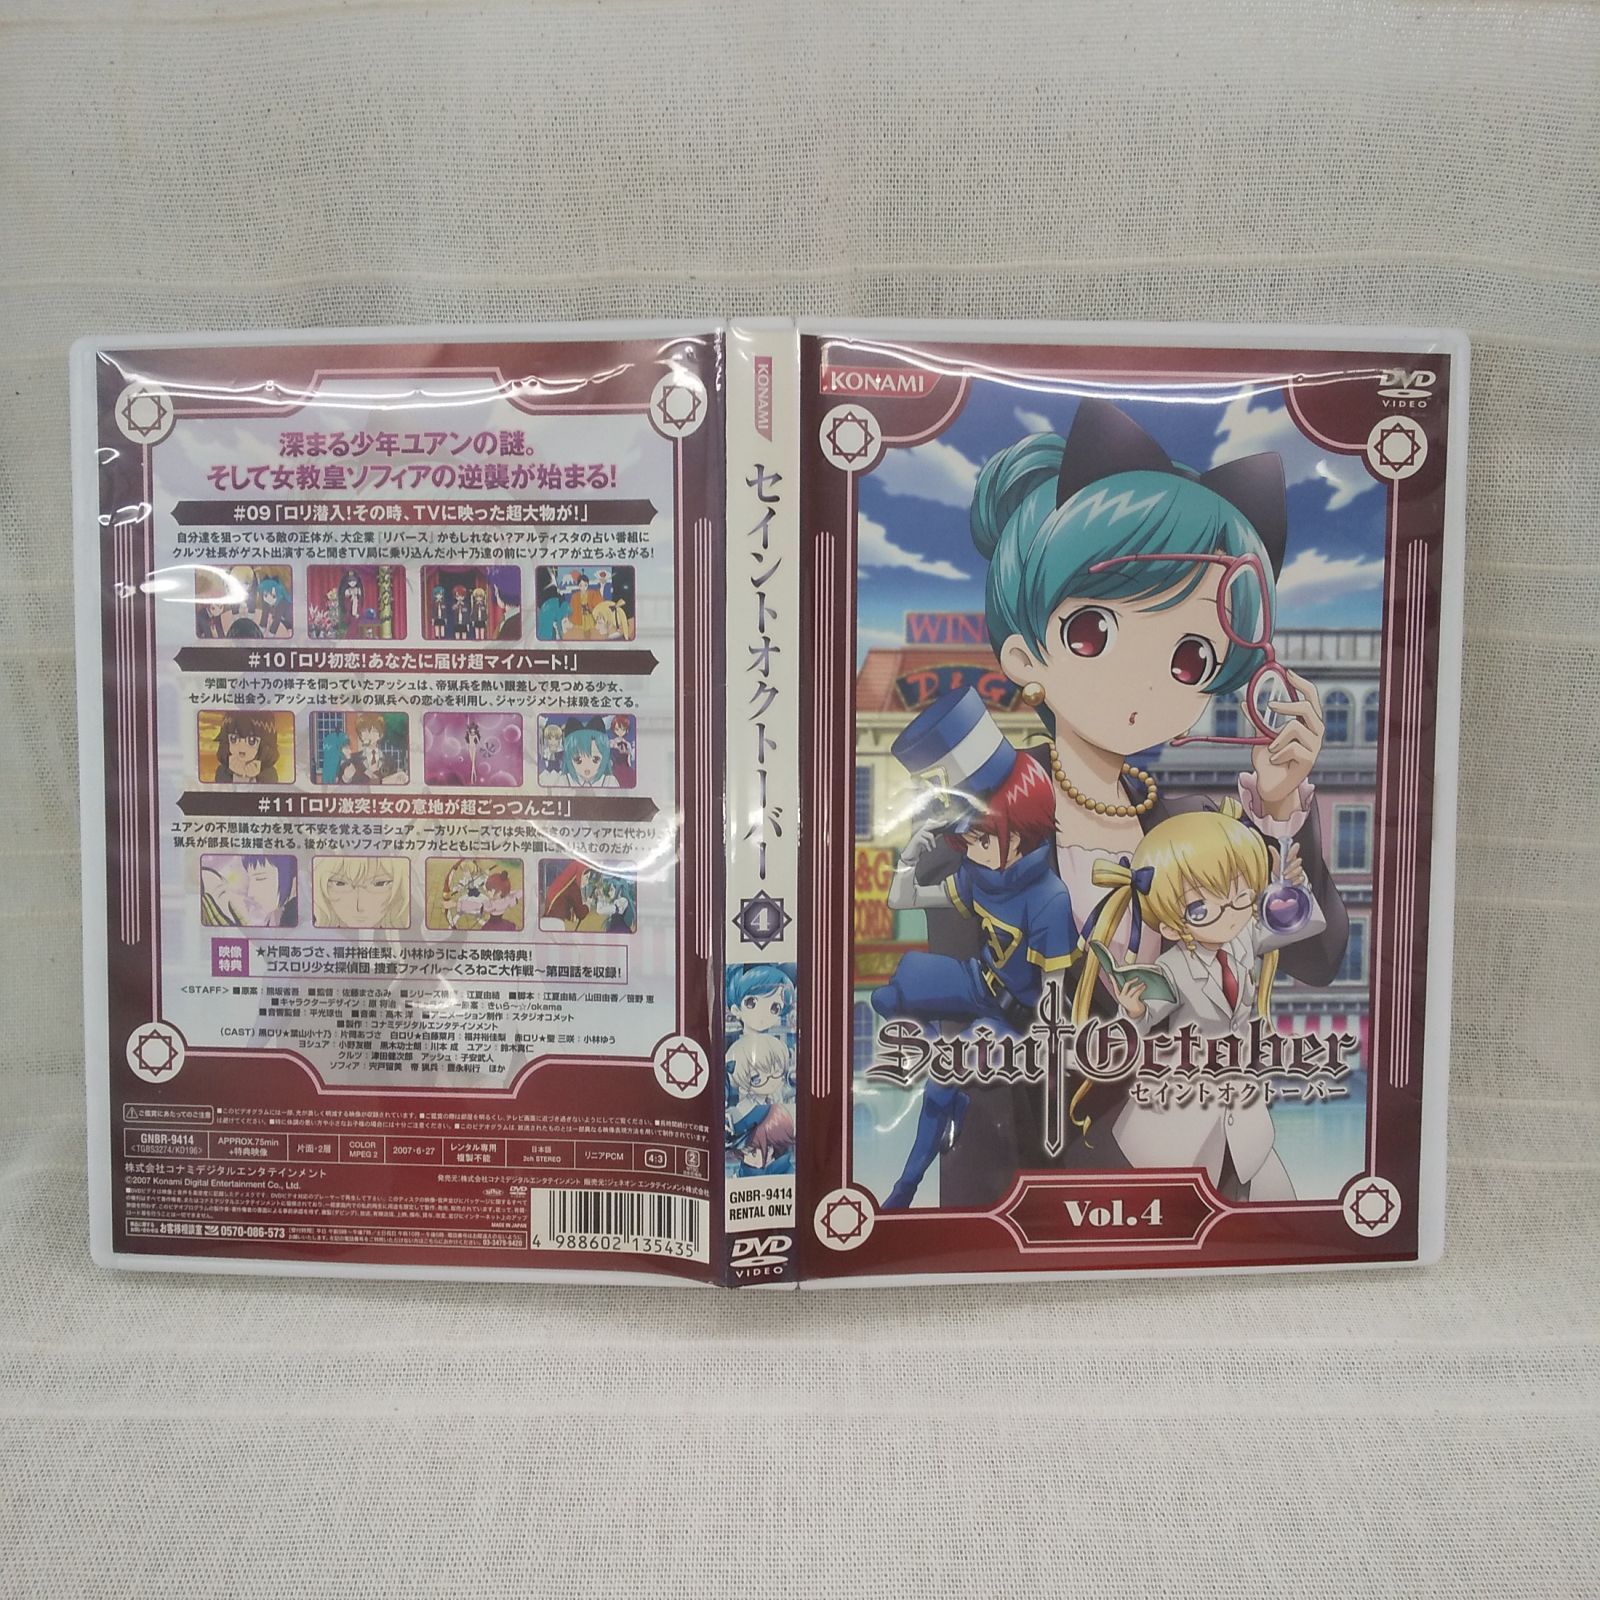 セイントオクトーバー Vol.4 レンタル専用 中古 DVD ケース付き - メルカリ